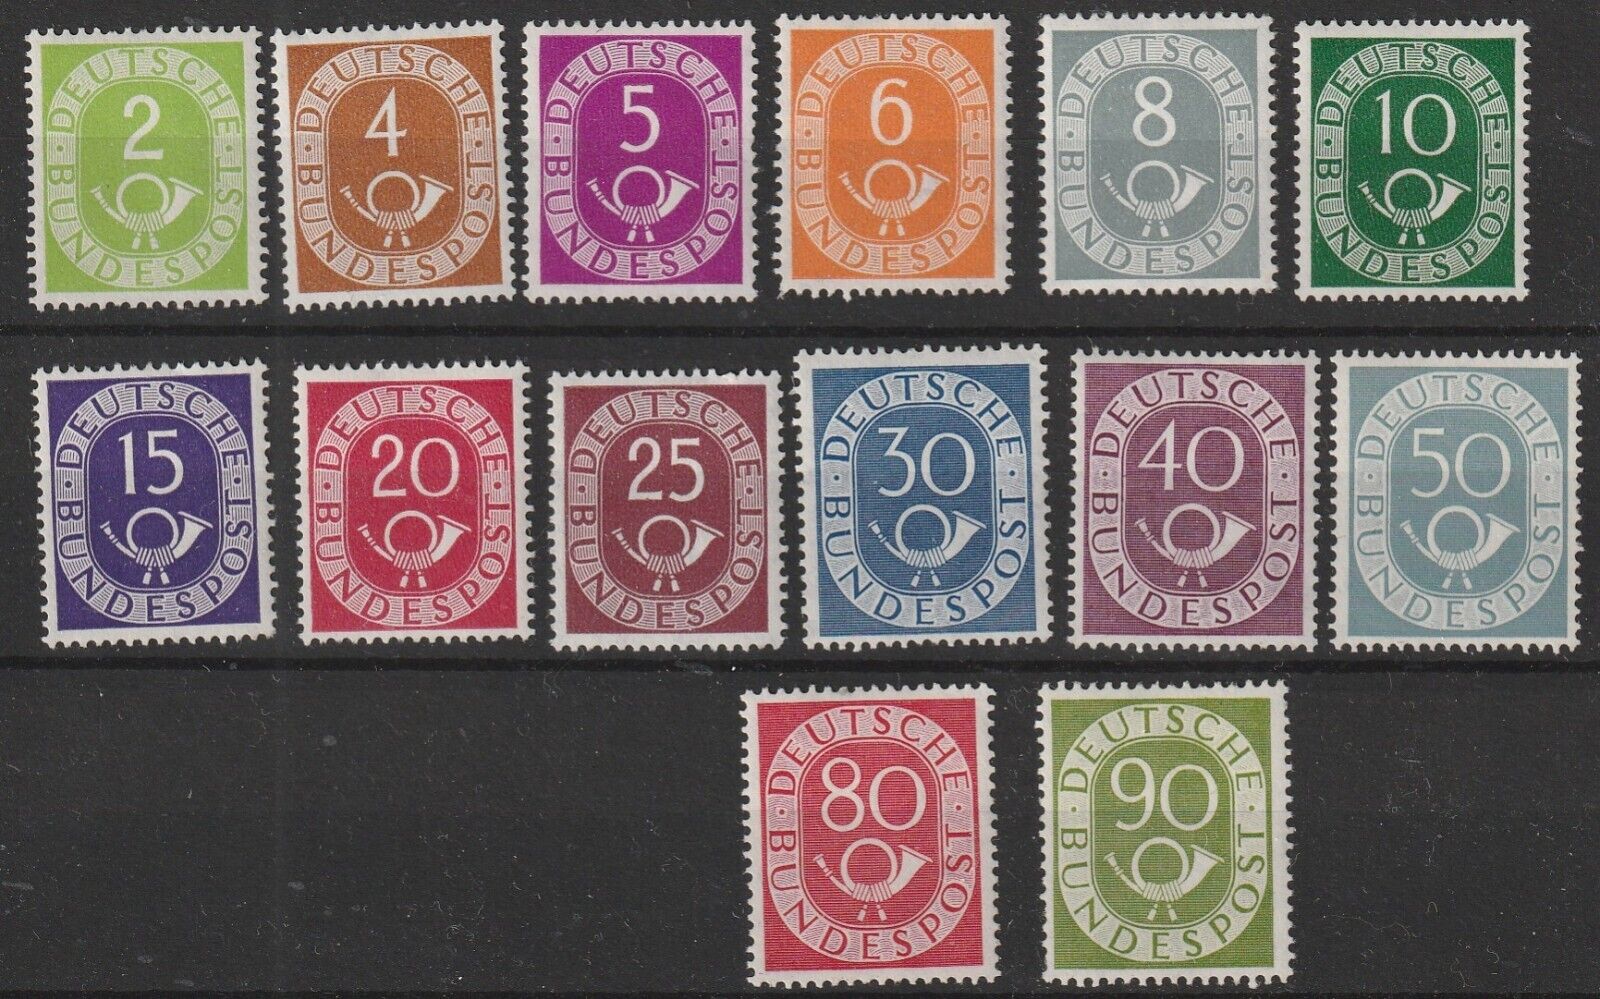 Germany Bund 1951 posthorn set vf MNH  2 stamps missing